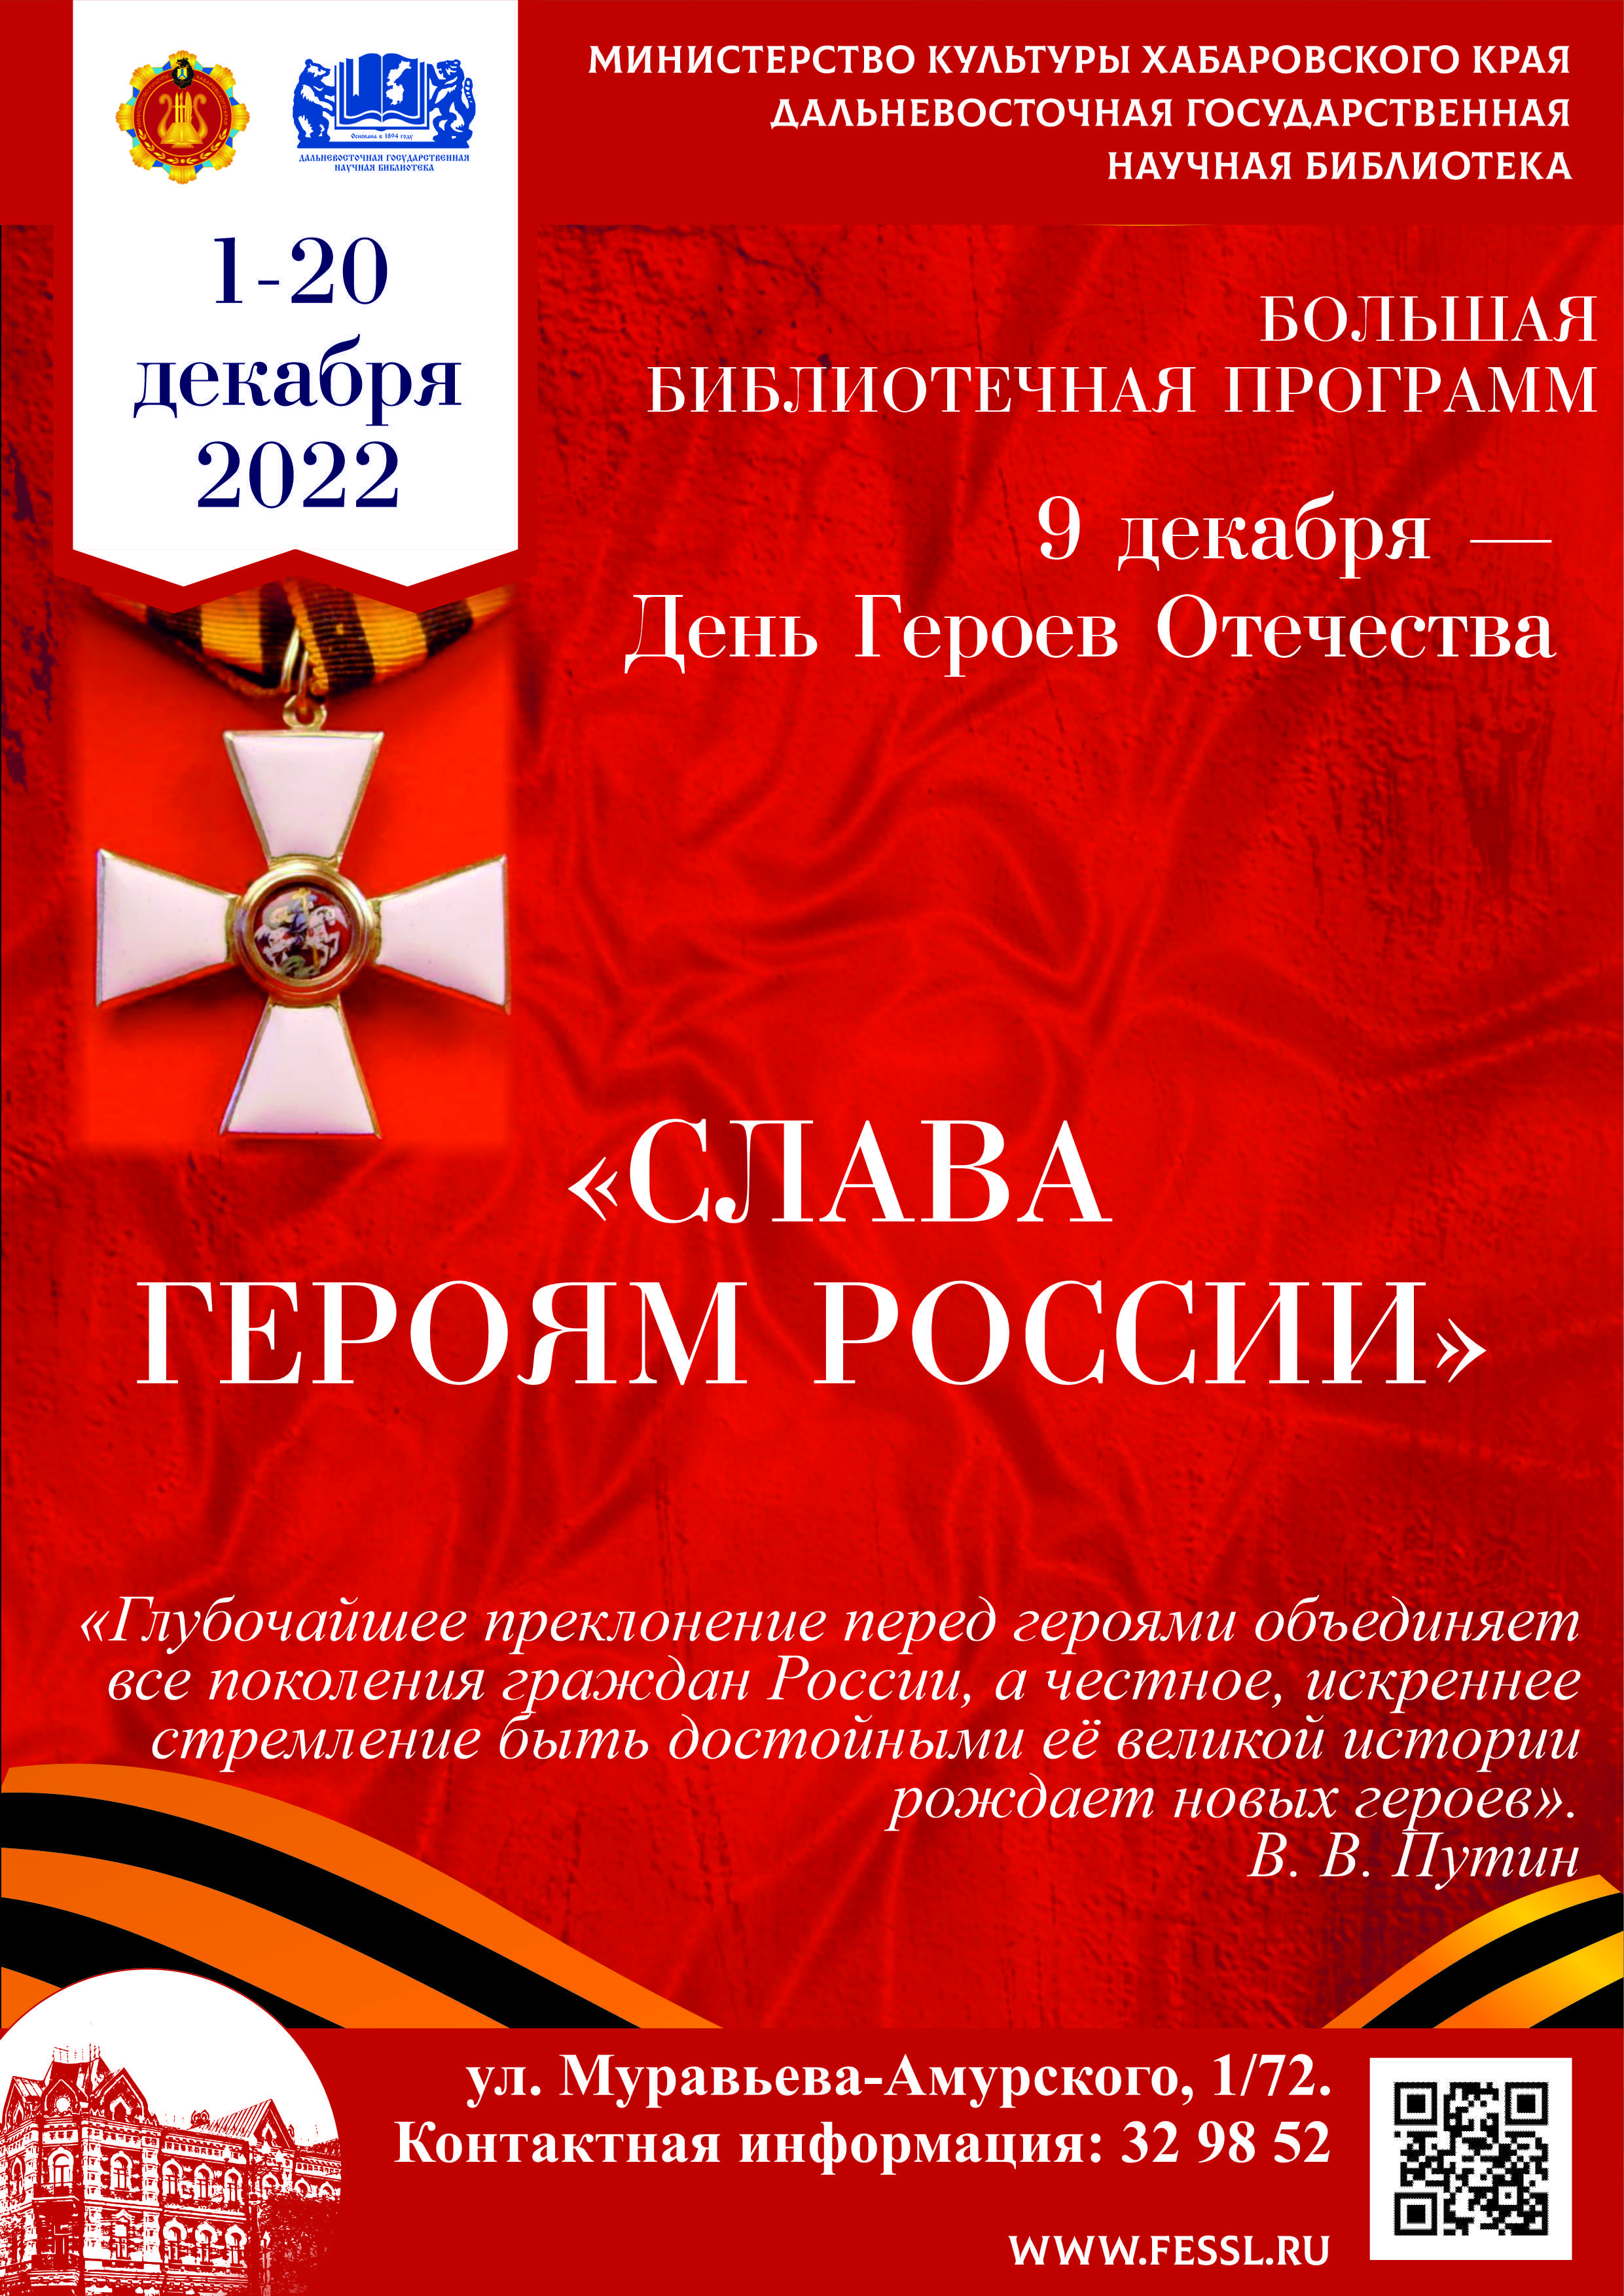 Библиотека представляет информационно-просветительскую программу «Слава героям России».